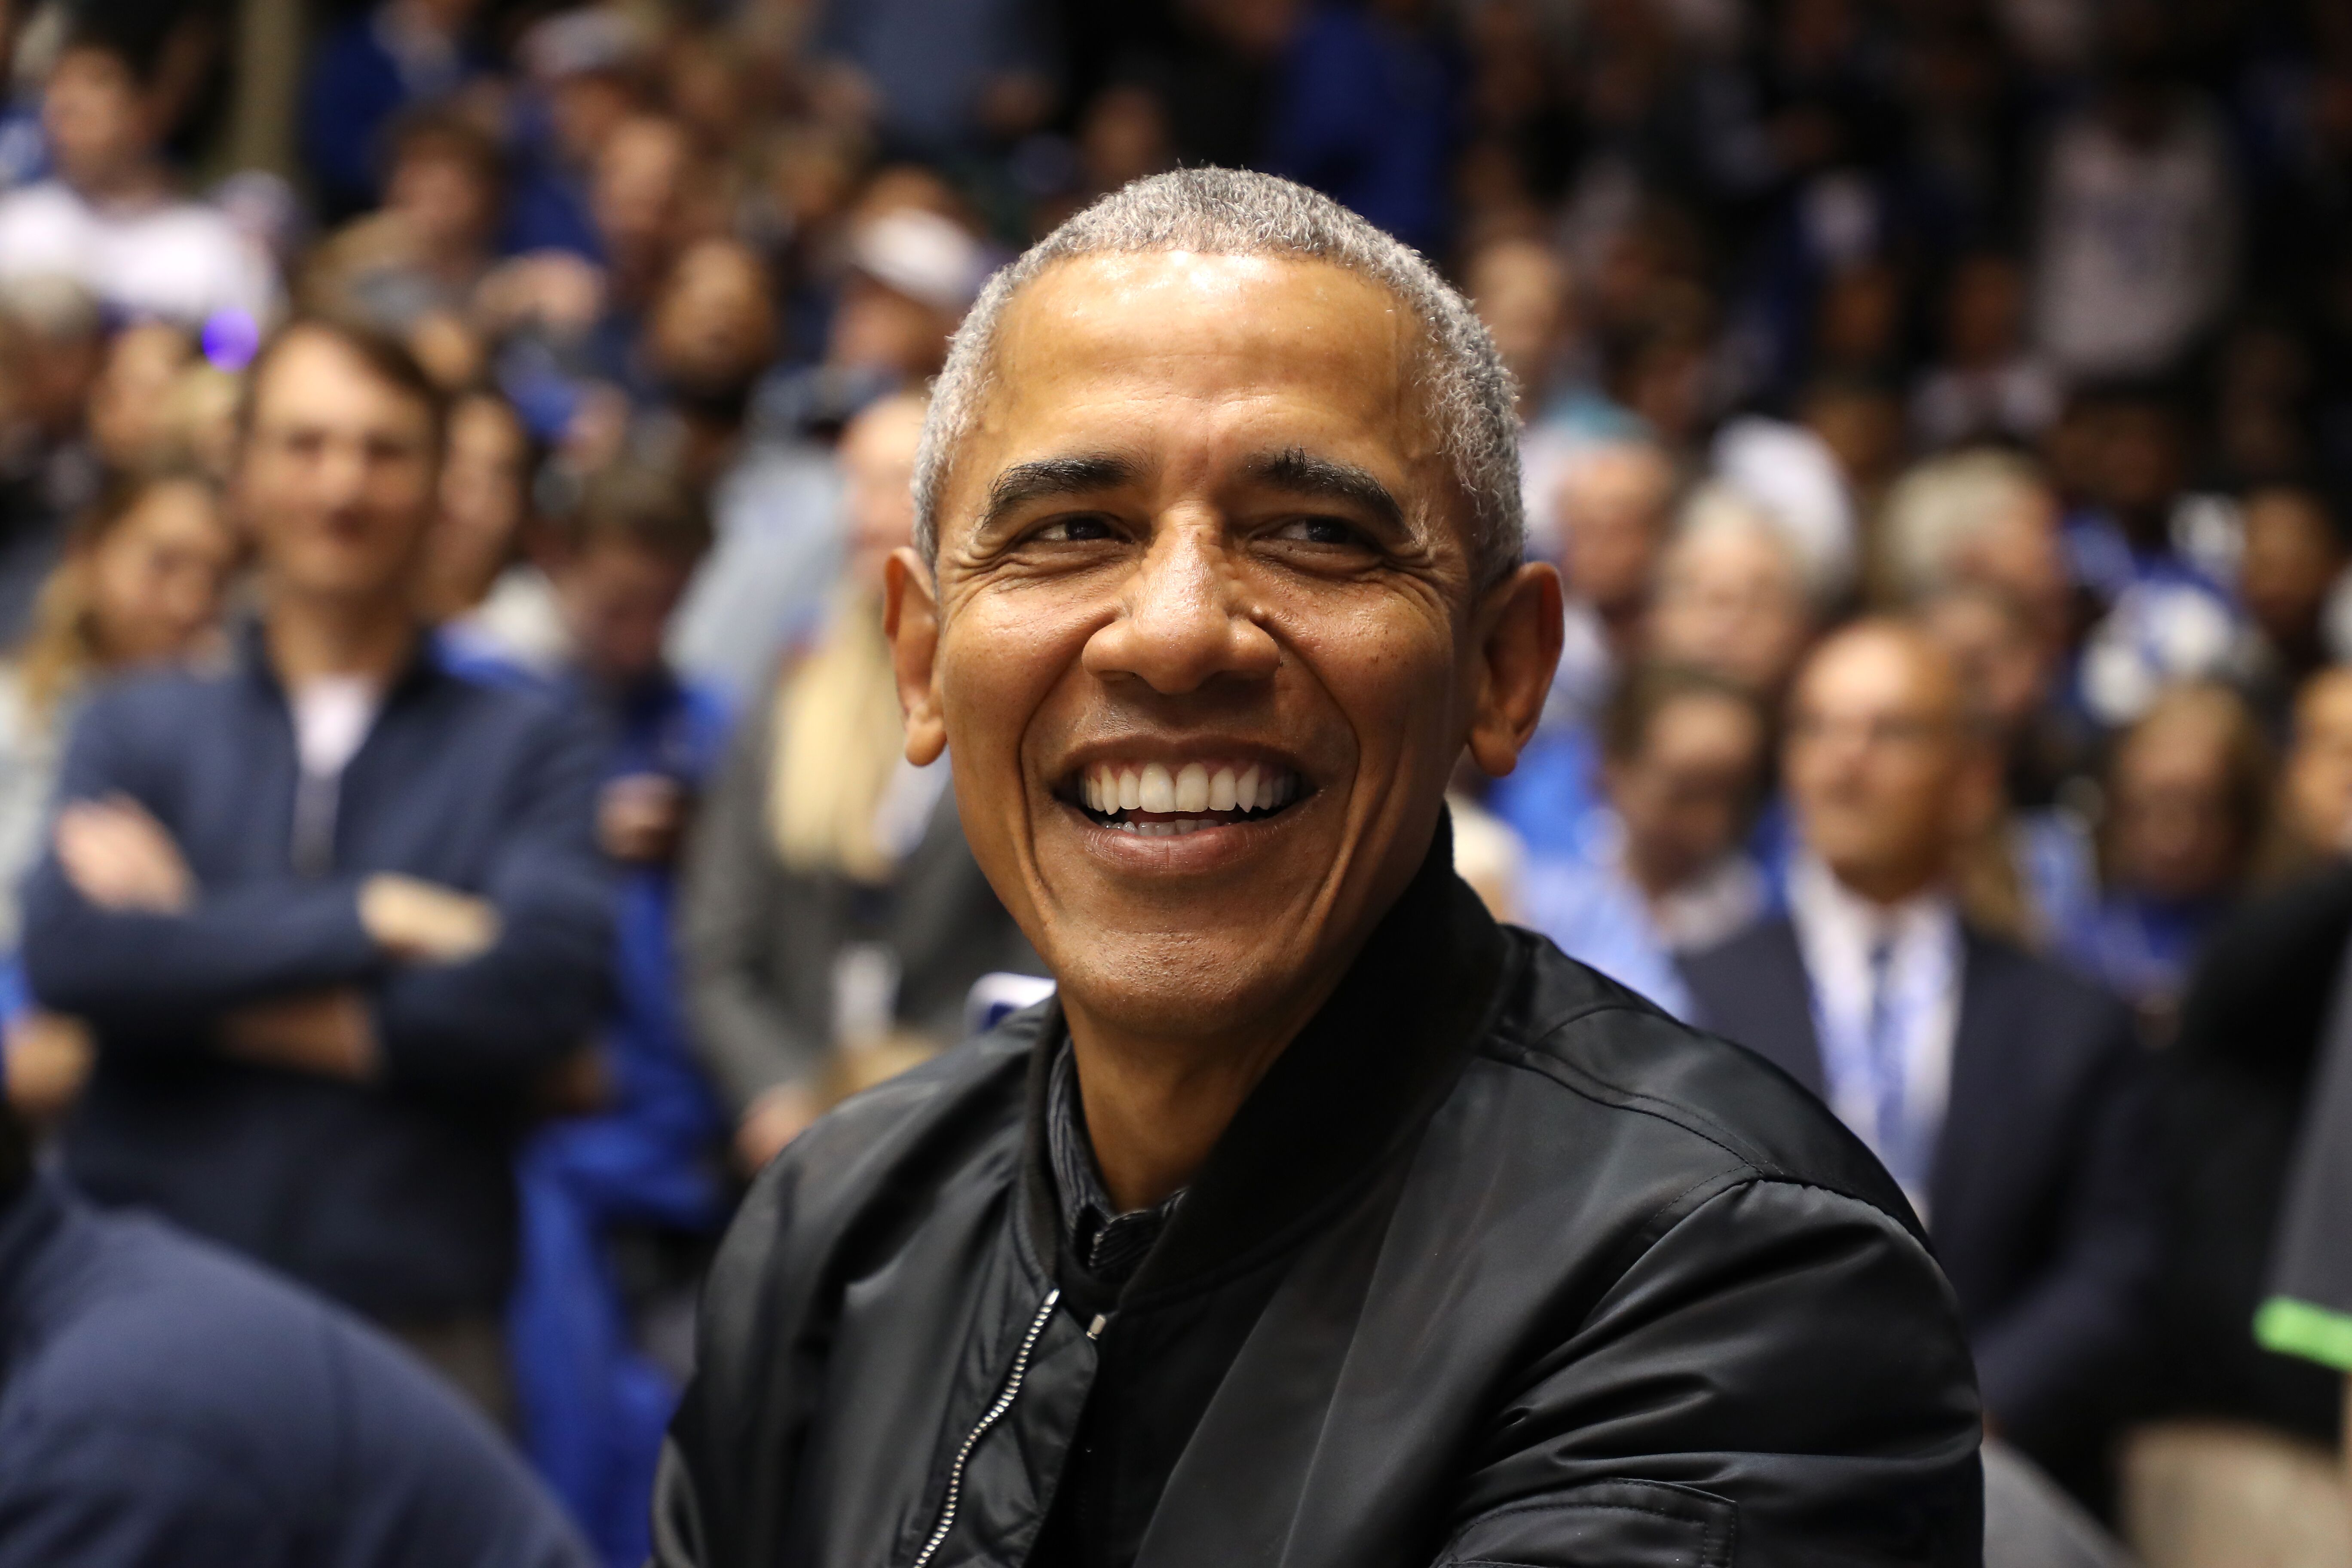 Former US President Barack Obama/ Source: Getty Images